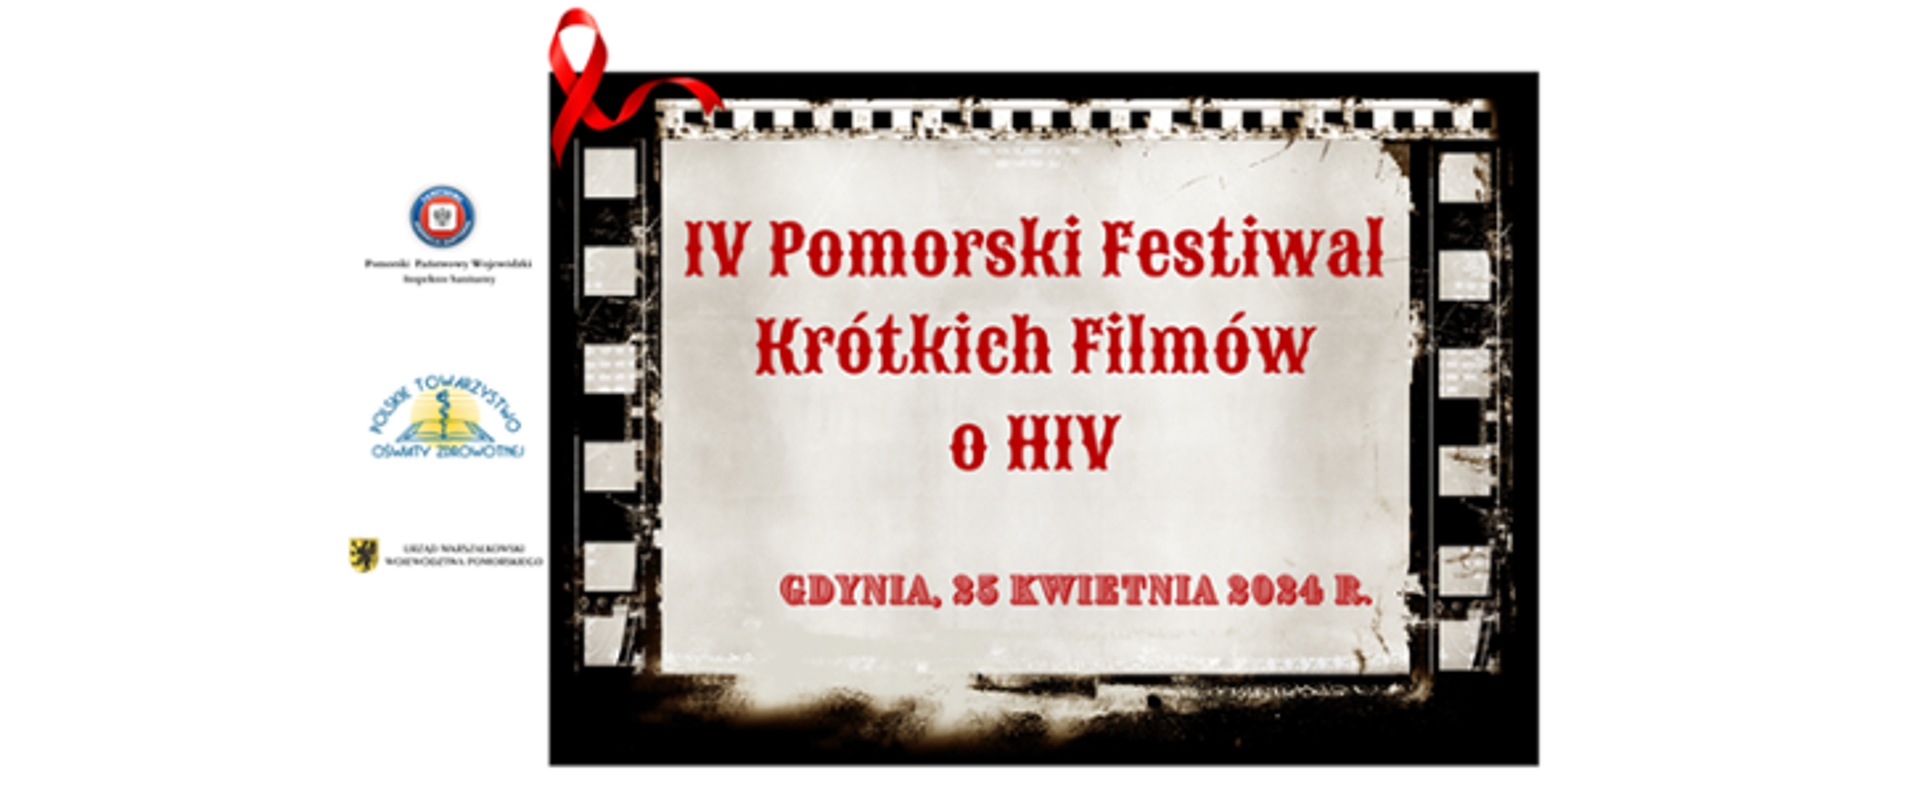 Kadr z kliszy filmowej z nazwą i datą festiwalu.